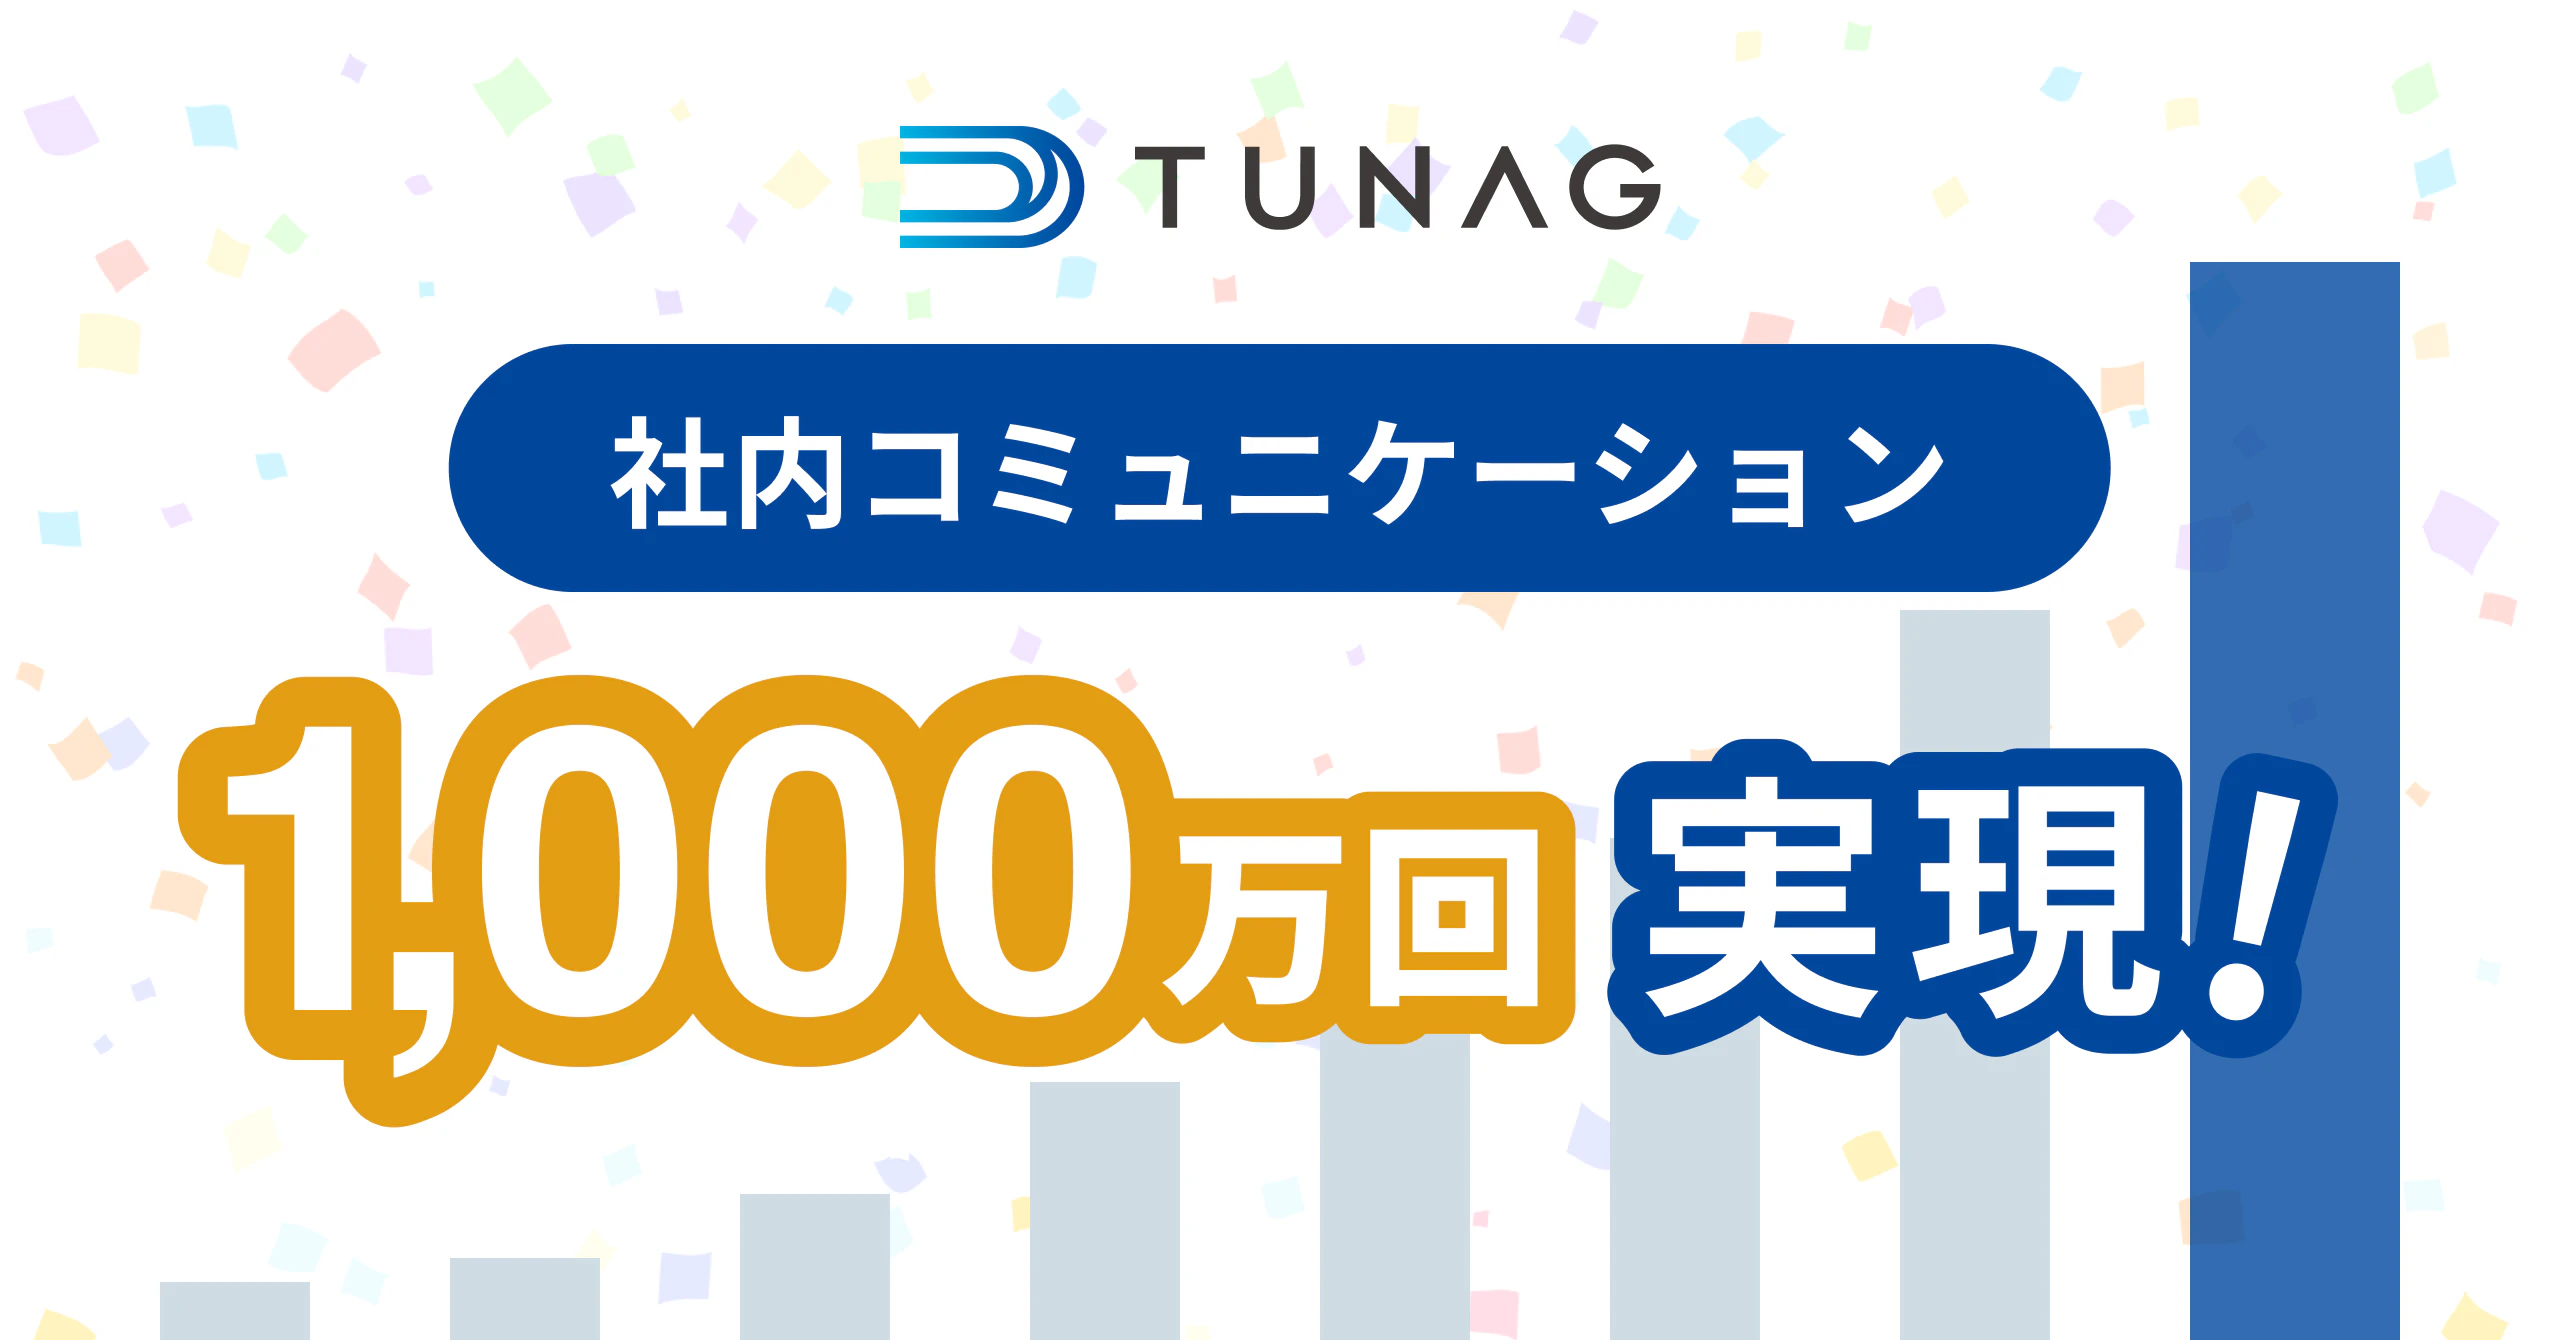 TUNAG、1,000万回の社内コミュニケーションを実現